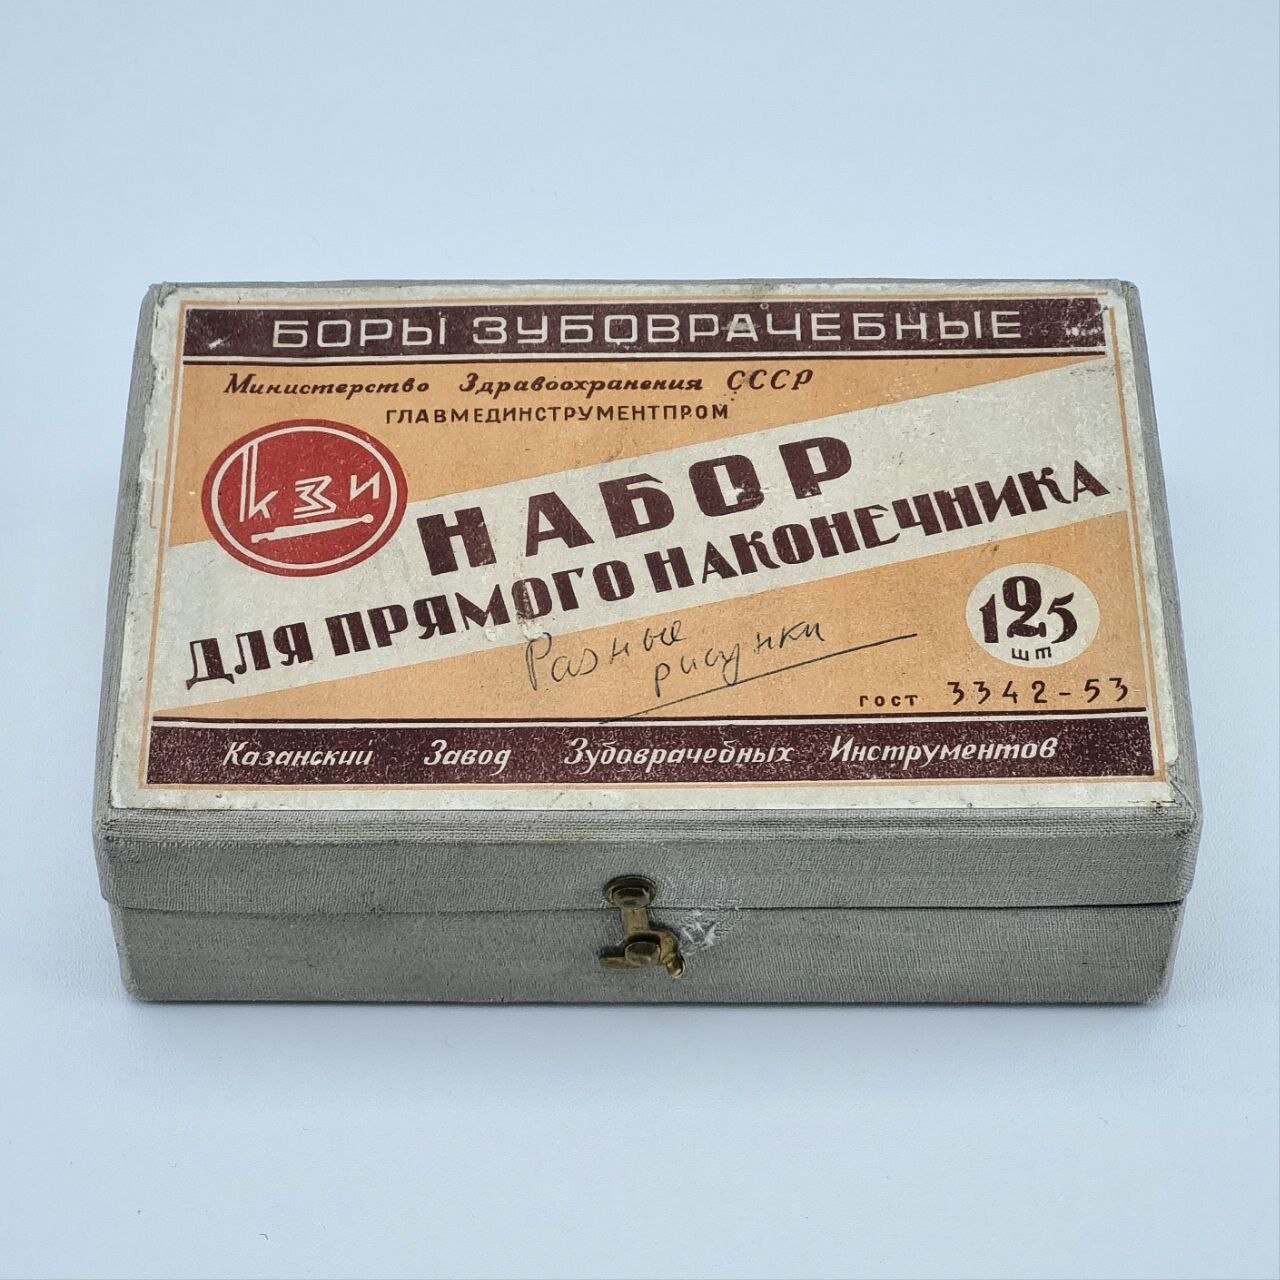 Винтажные стоматологические комплектующие и коробки от них. Главмединструментпром. СССР, 1970-е.